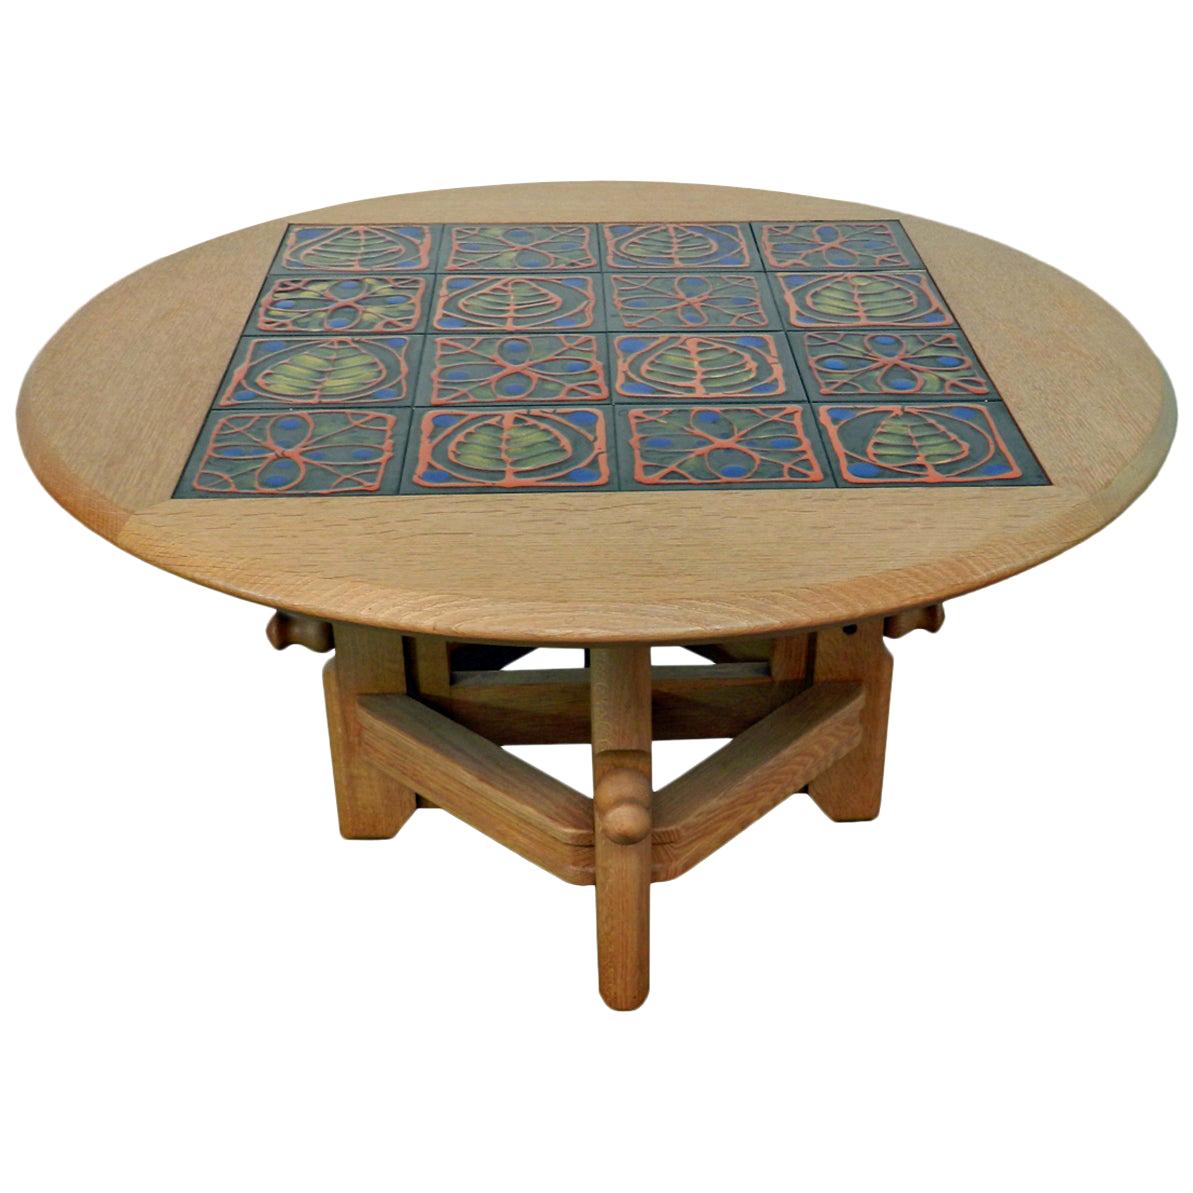 Guillerme & Chambron "Ladislas" Oak and Ceramic Adjustable Table, Votre Maison For Sale